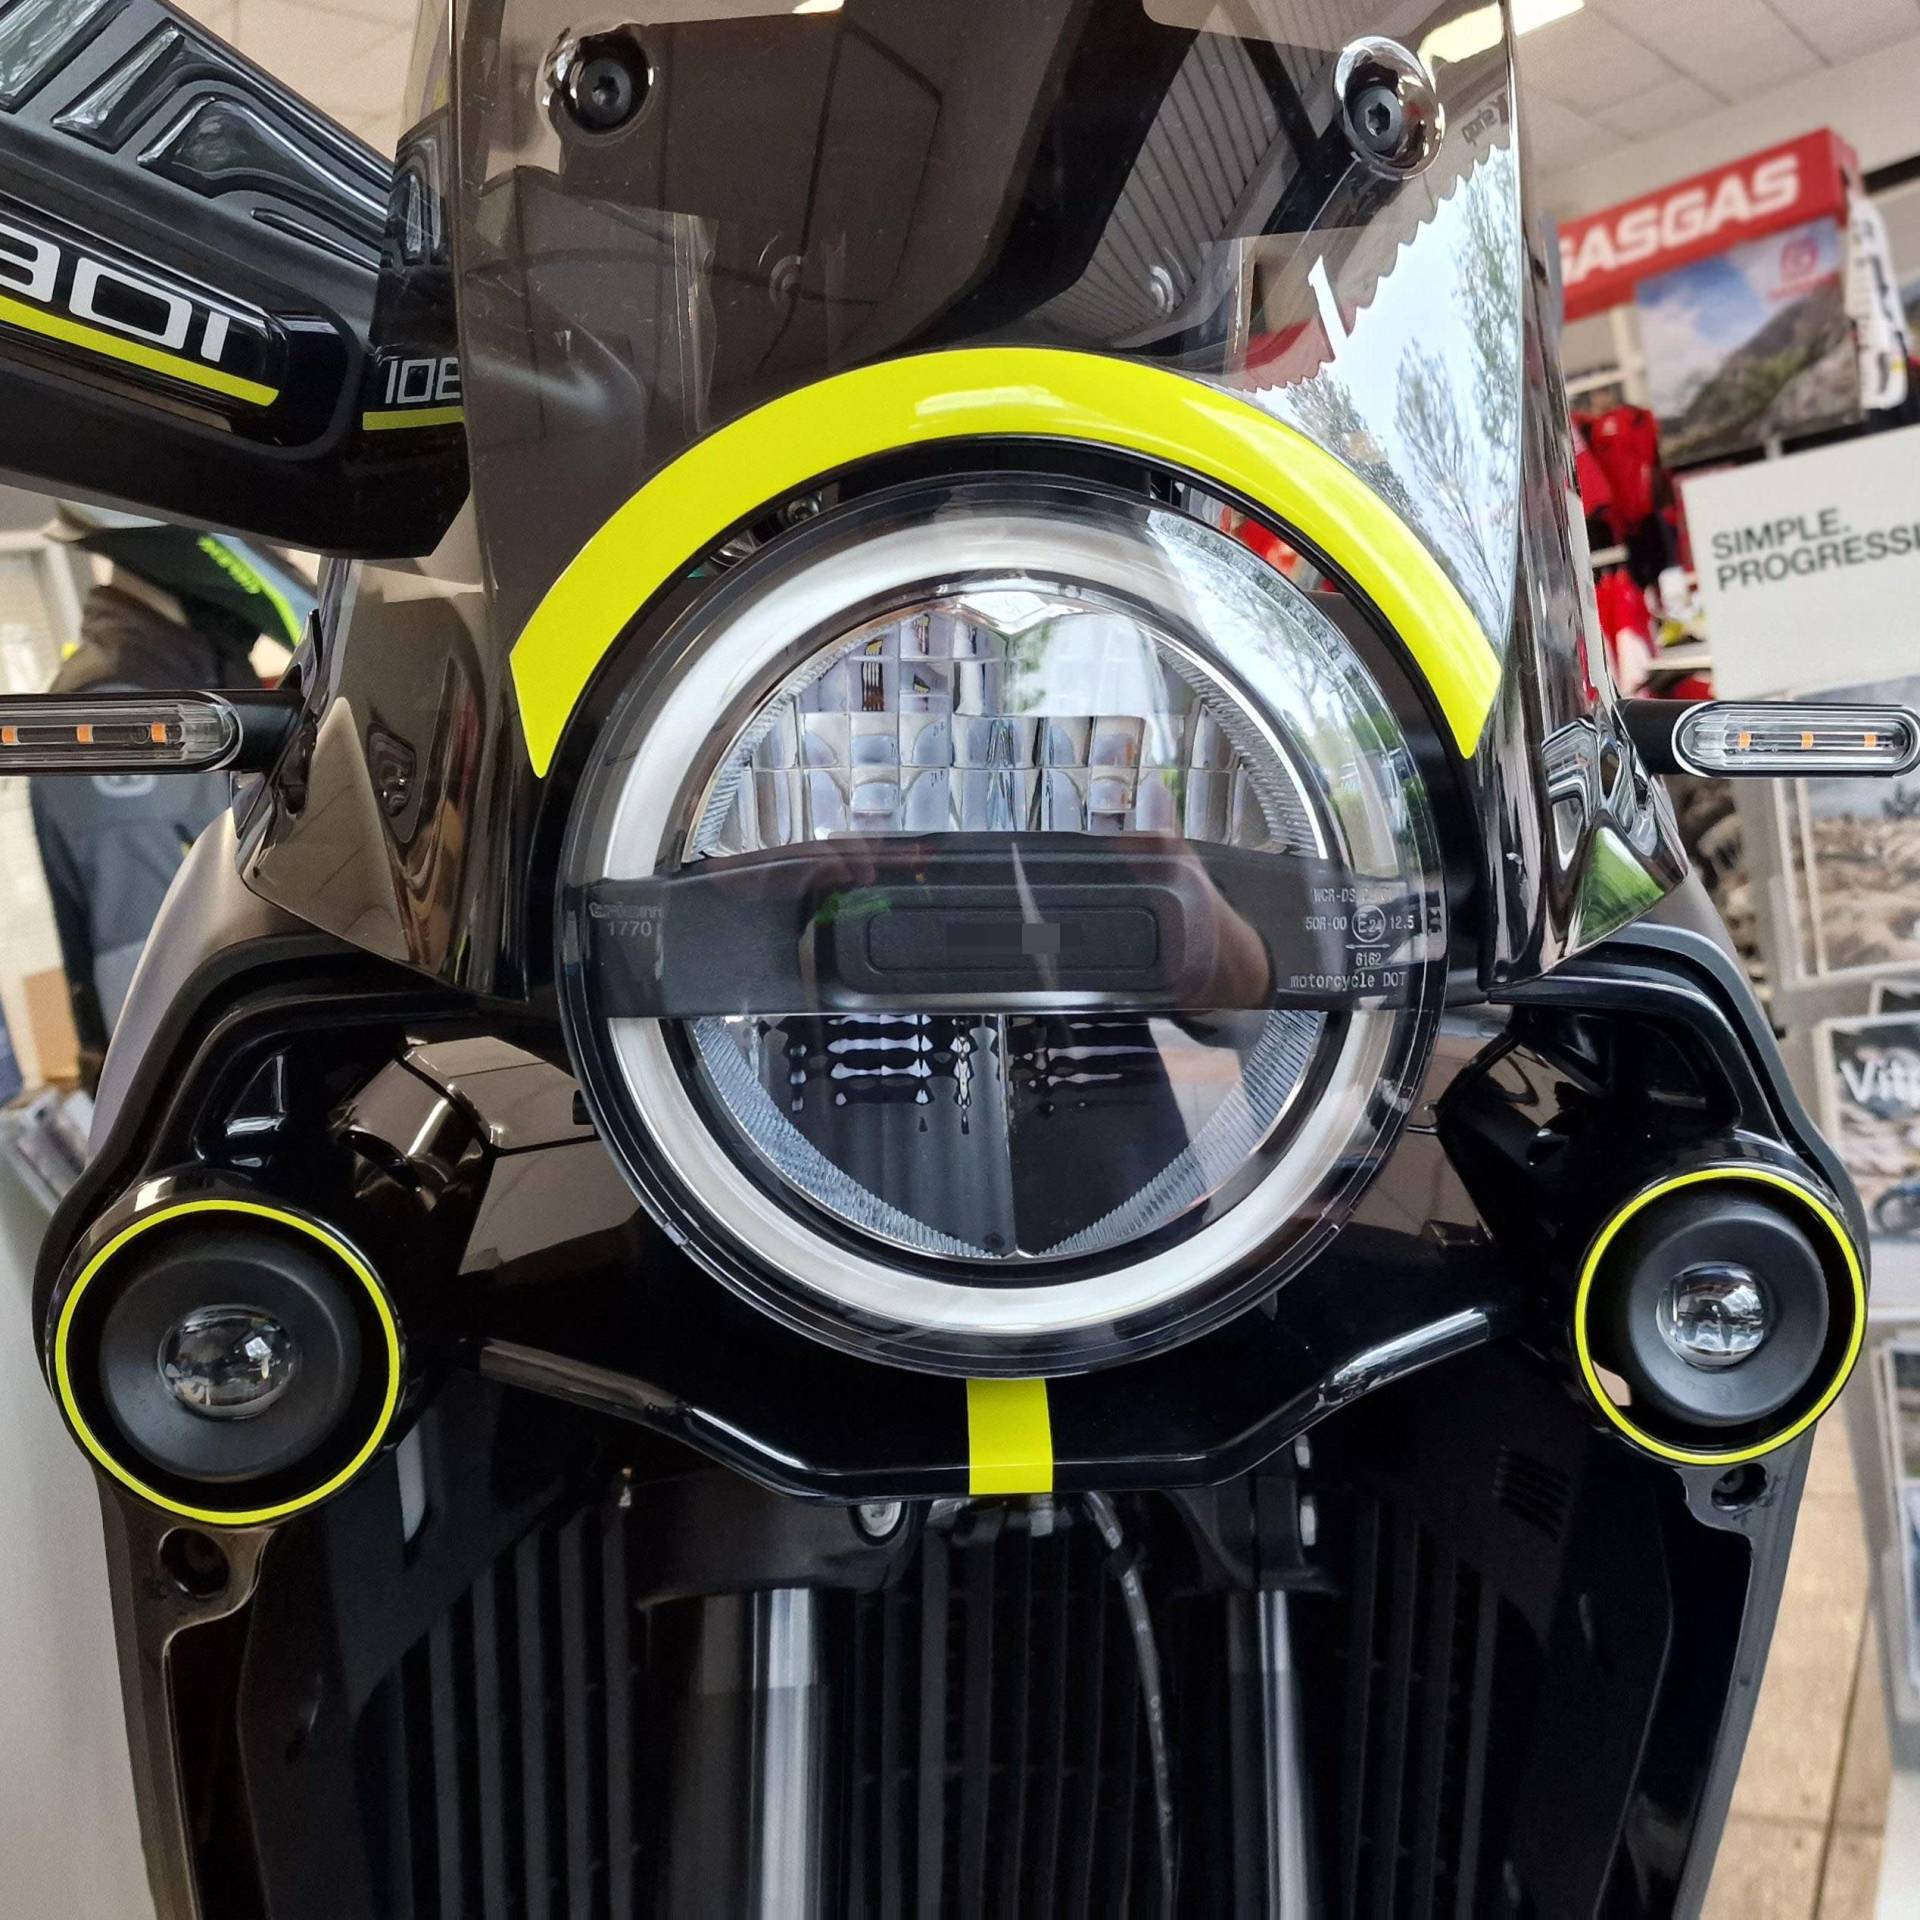 Resin Bike Aufkleber für Motorrad Kompatibel mit Husqvarna Norden 901 2022. Frontschutzgitter vor Stößen und Kratzern. Paar 3D-Harzklebstoff - Stickers - Made in Italy von Resin Bike